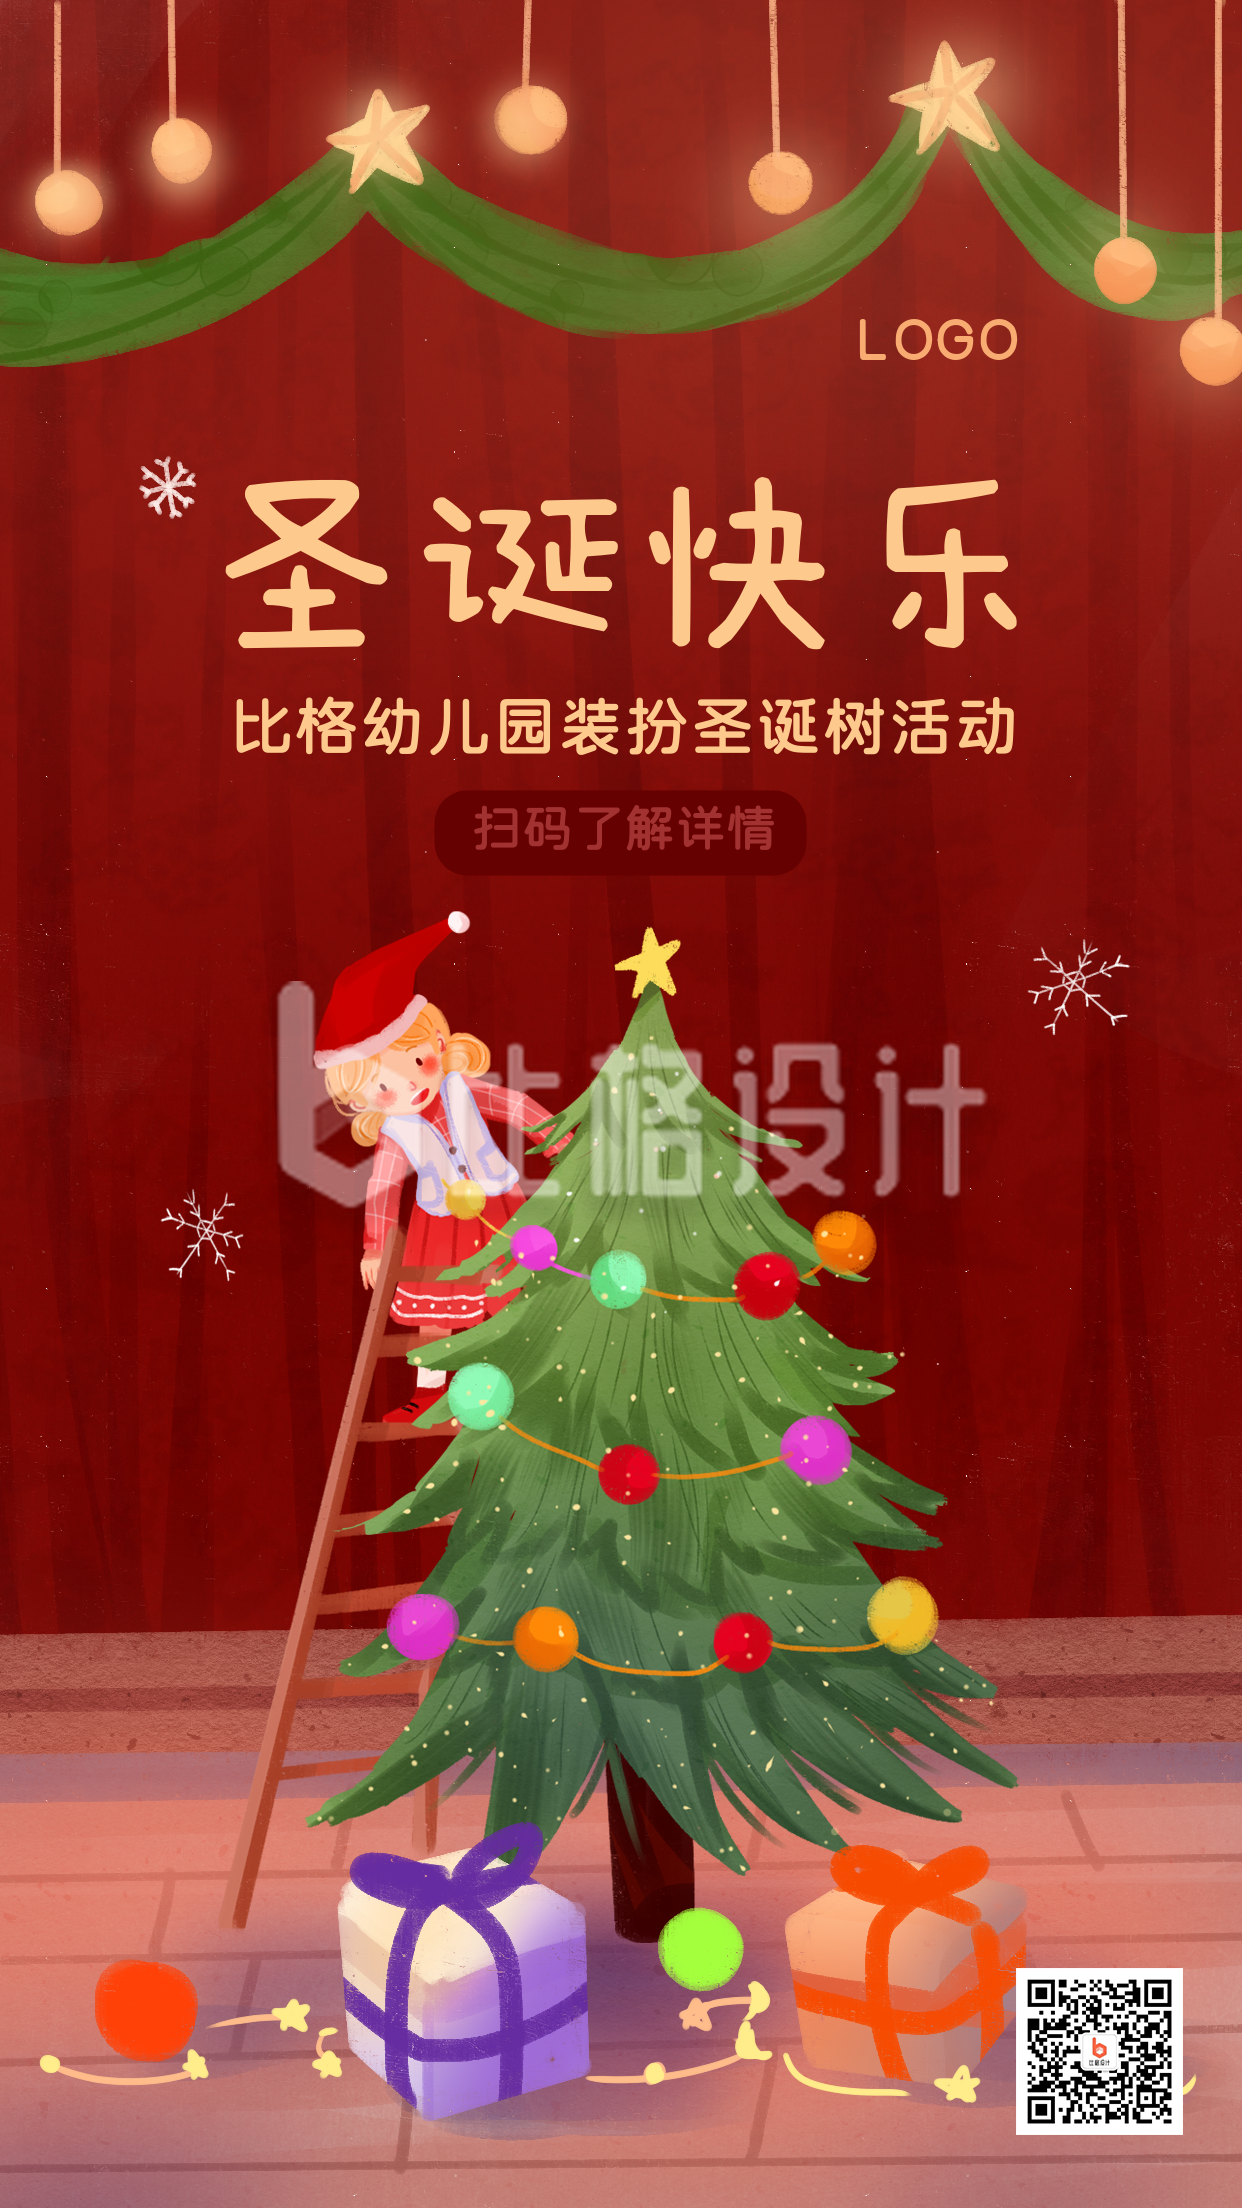 圣诞节装扮圣诞树活动预告舞台幕布手机海报